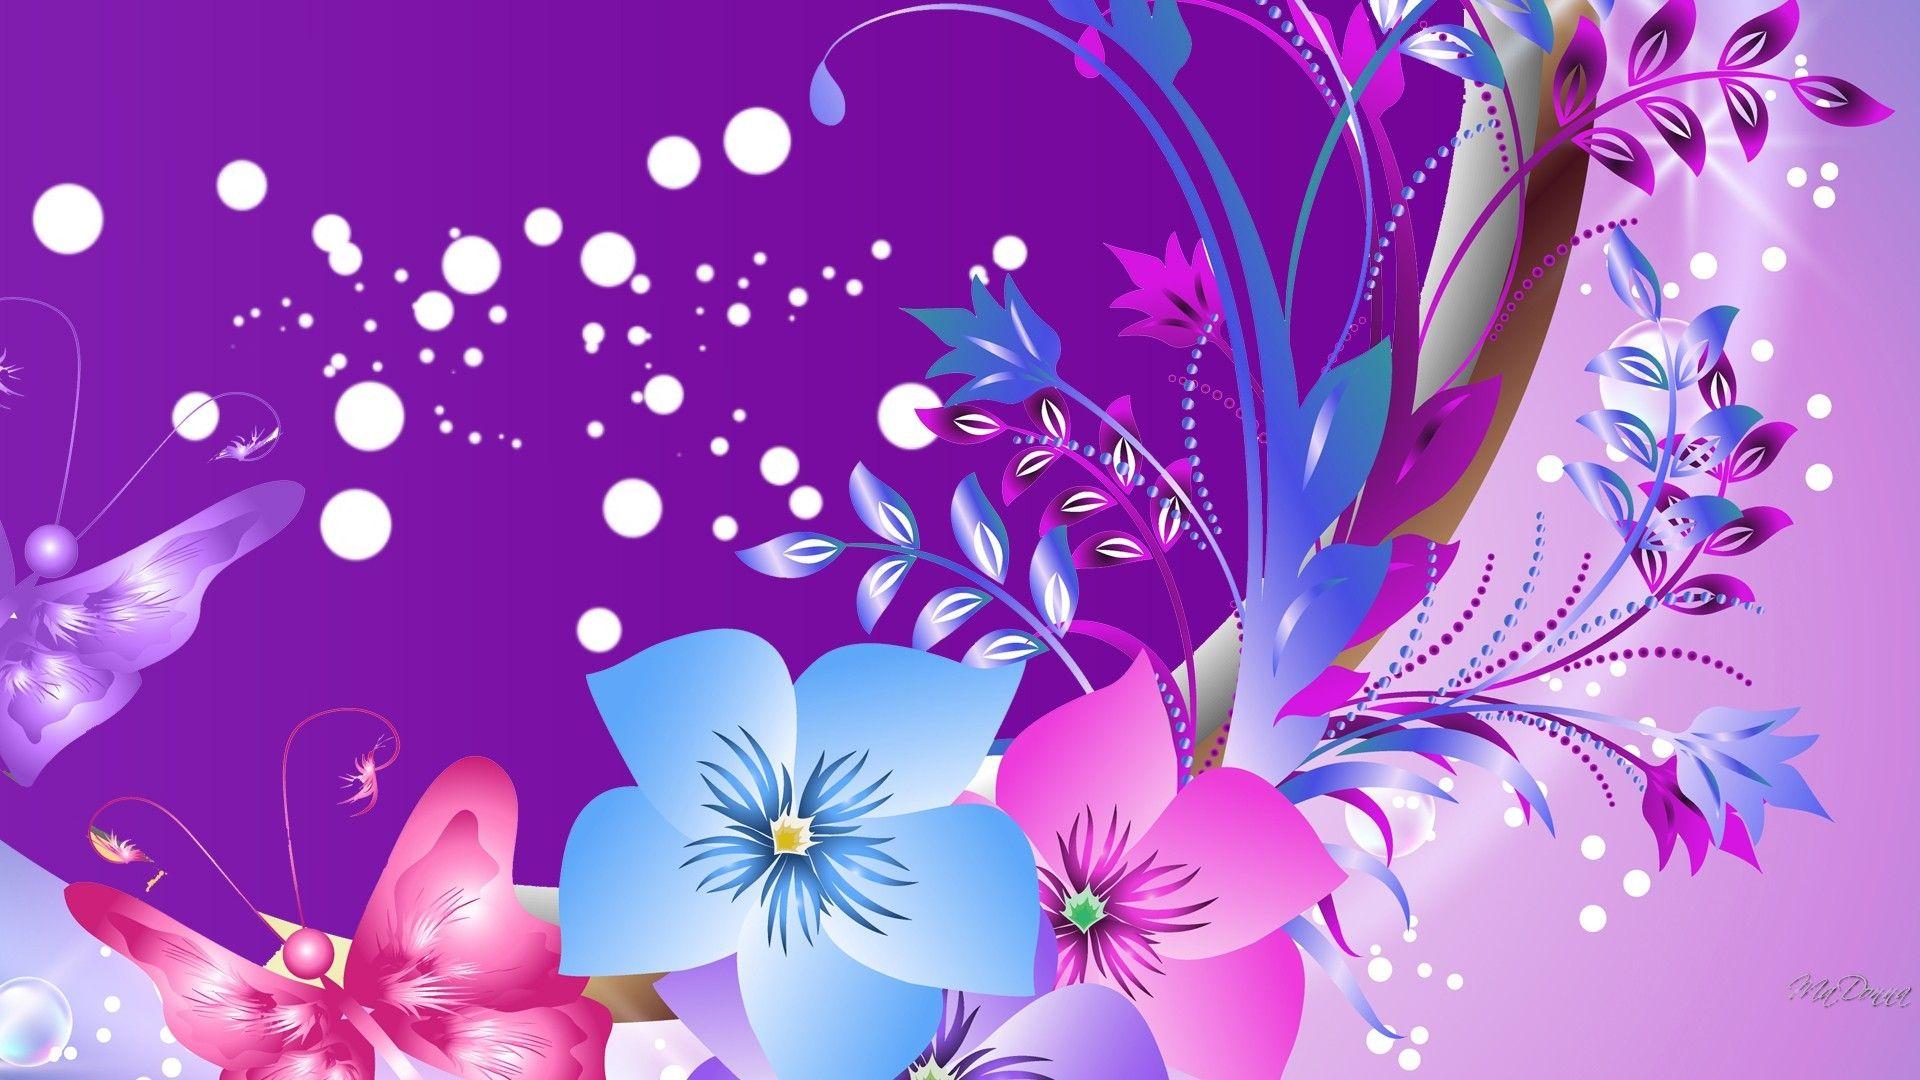 Flowers: Pink Dots Summer Purple Butterflies Abstract Flowers